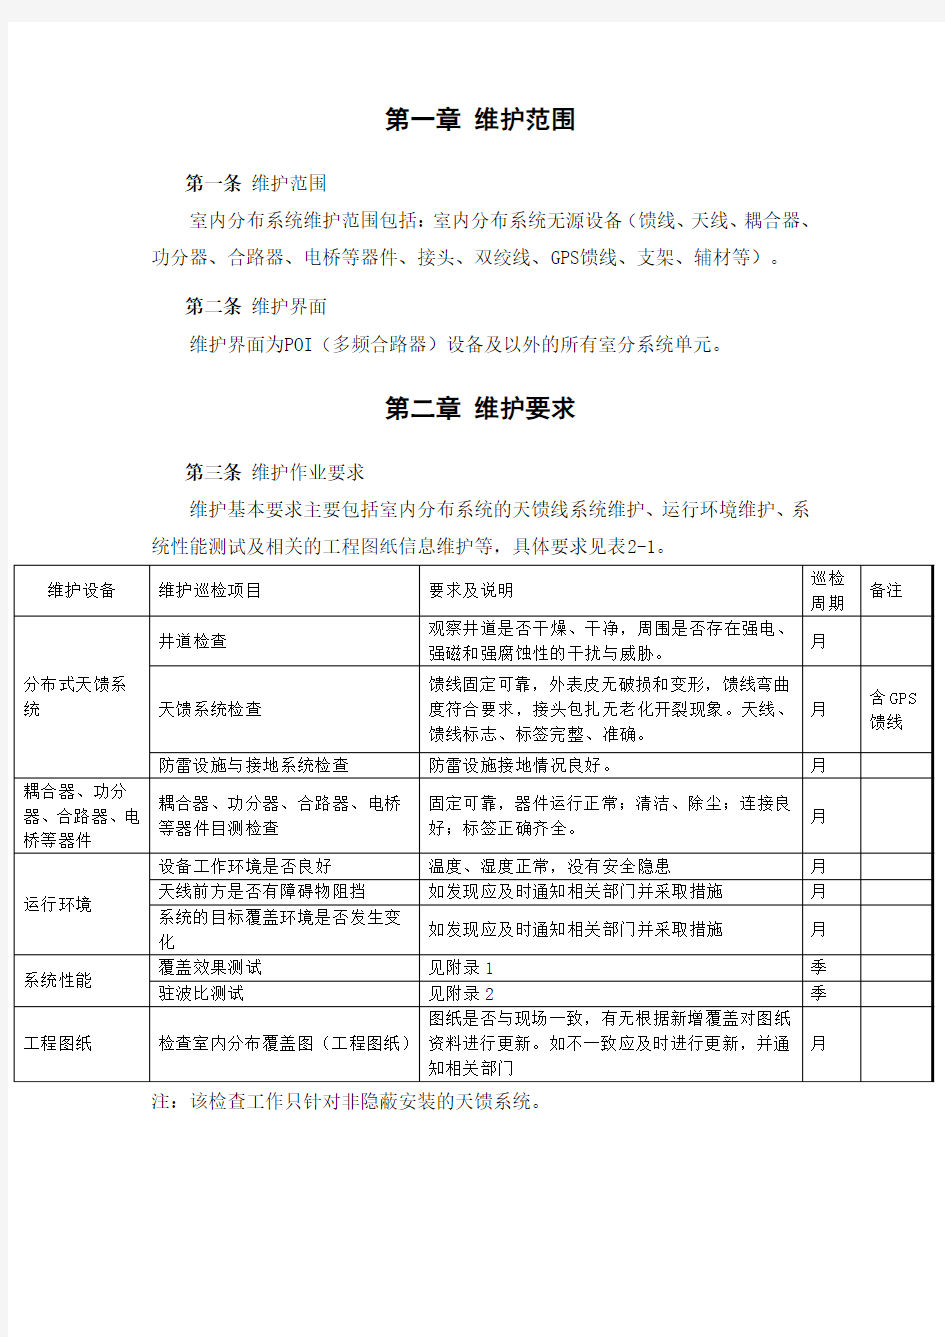 中国铁塔股份有限公司维护工作要求(暂行)-室分系统维护分册v1.0